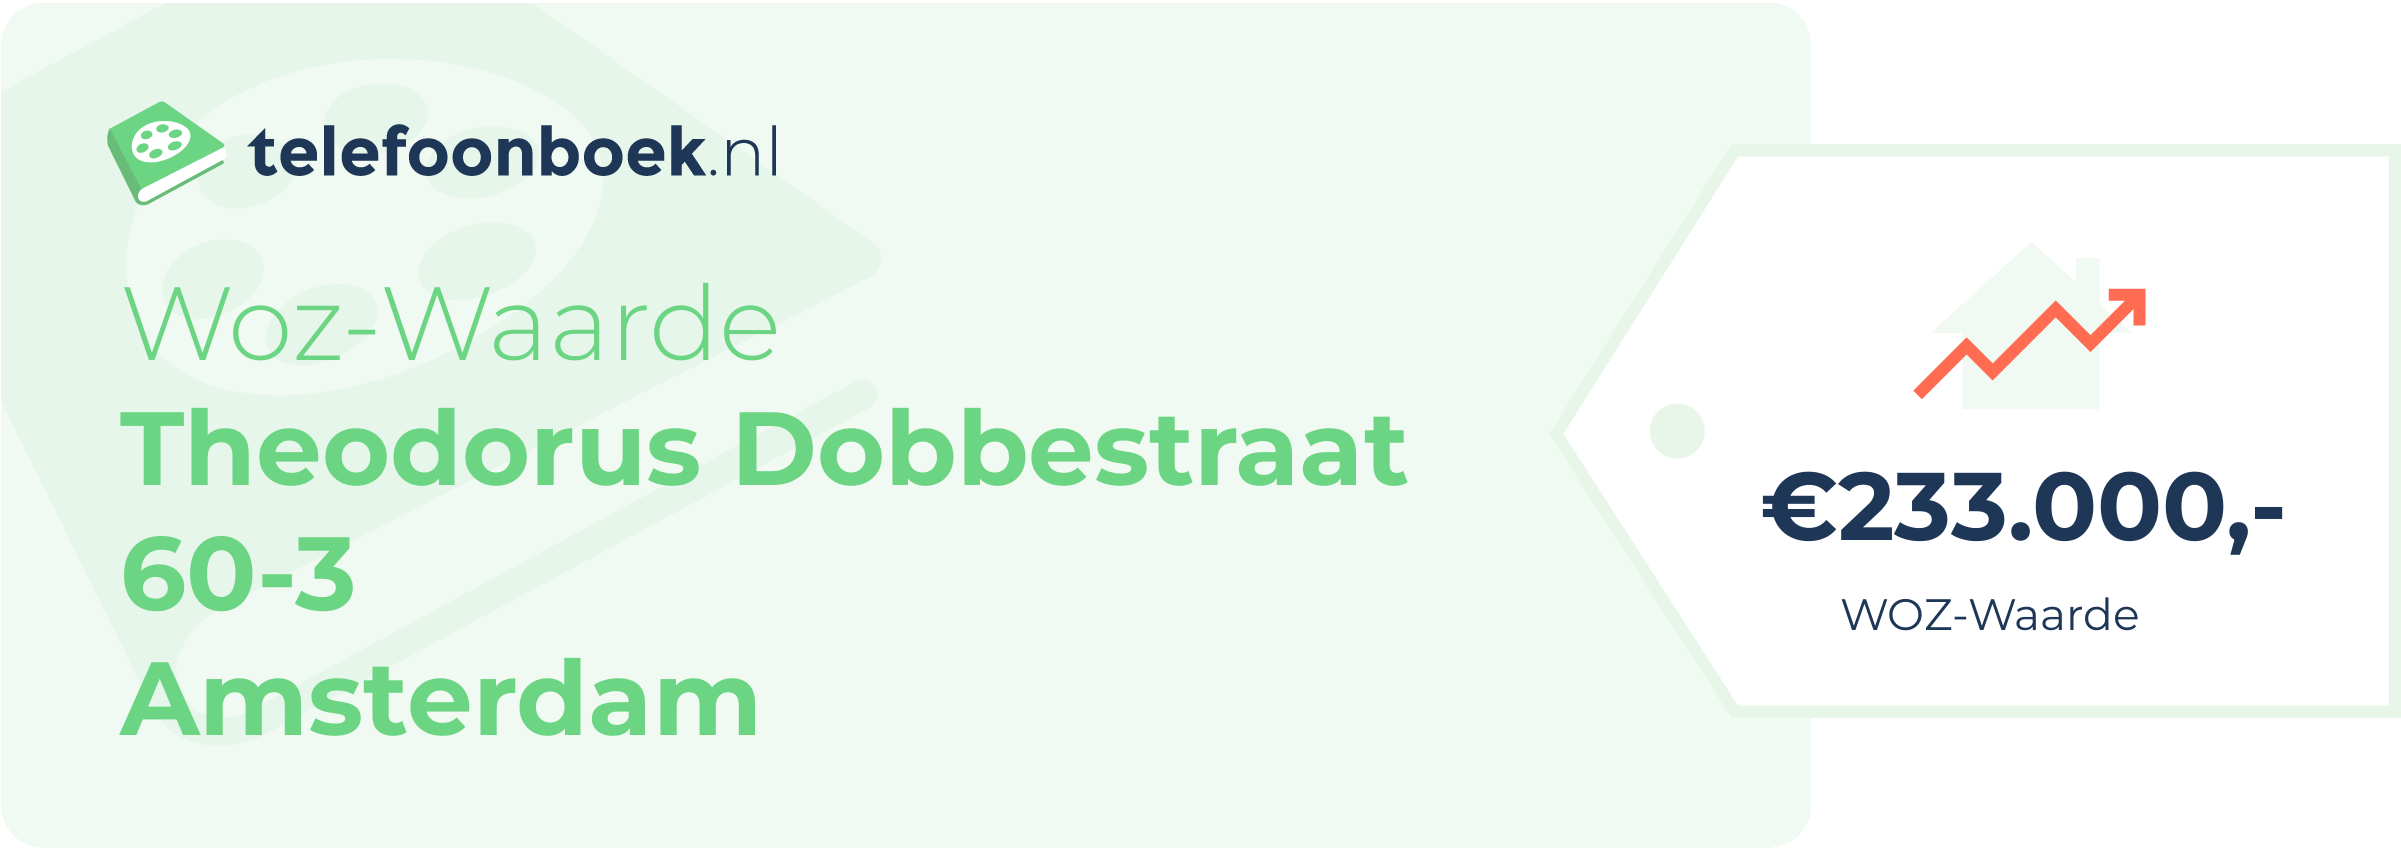 WOZ-waarde Theodorus Dobbestraat 60-3 Amsterdam